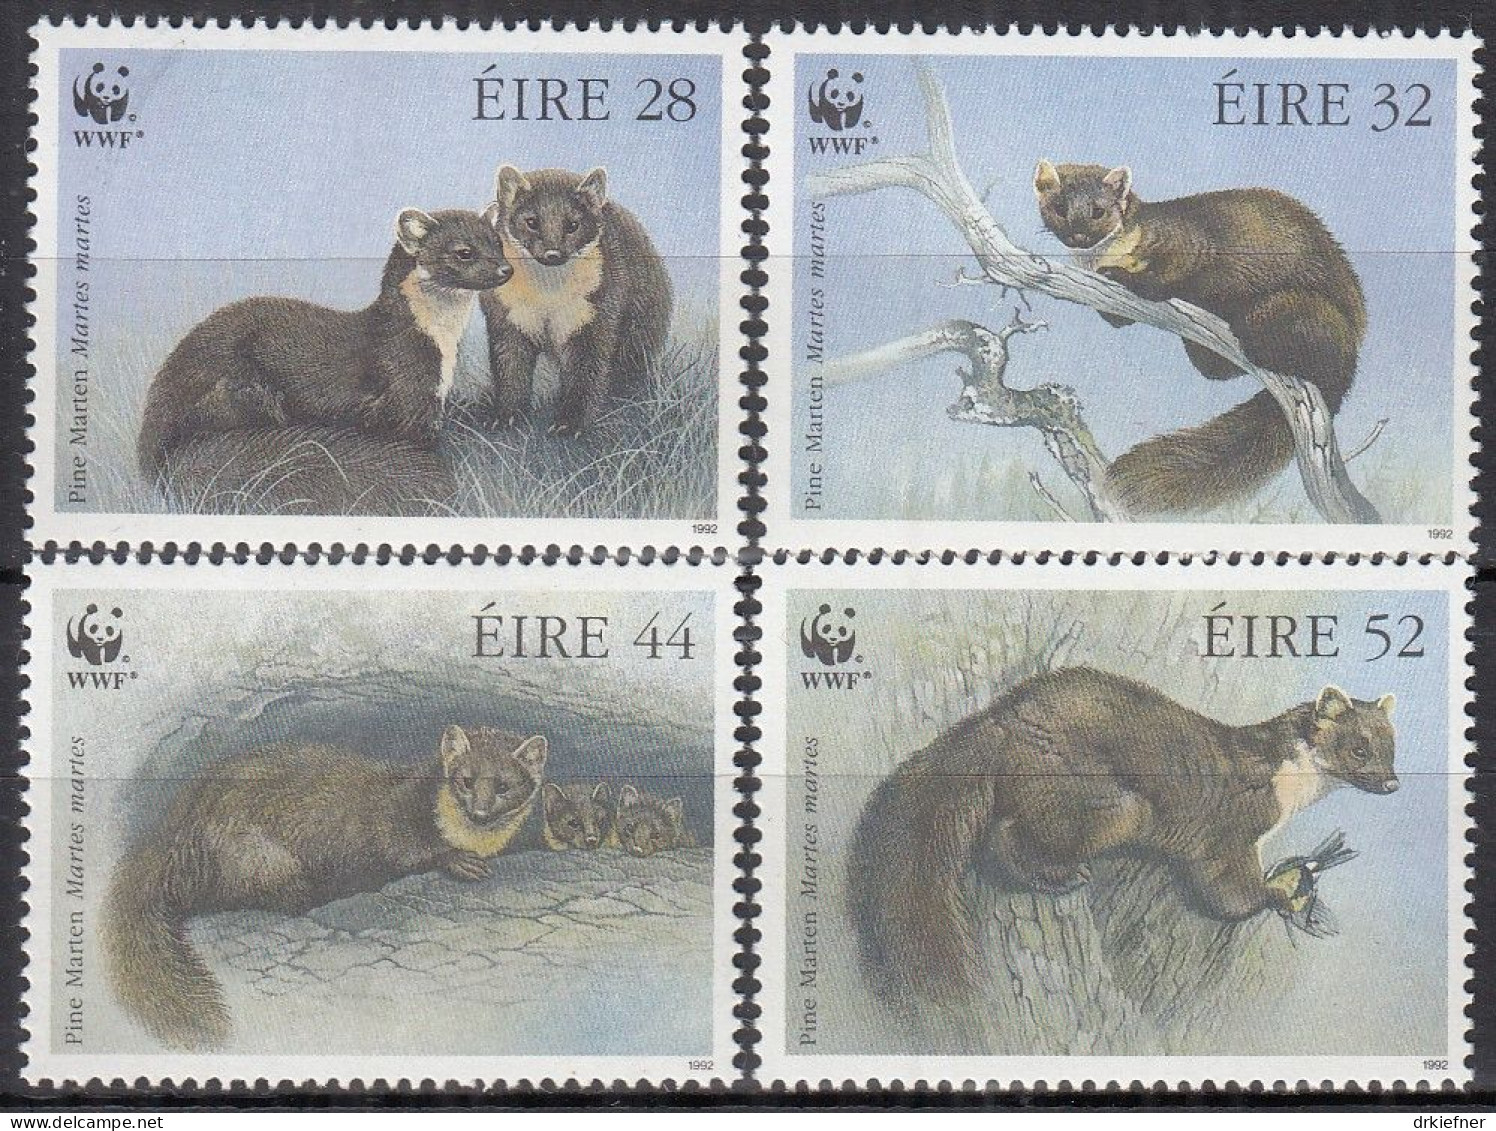 IRLAND  798-801, Postfrisch **, WWF, Weltweiter Naturschutz: Baummarder, 1992 - Neufs